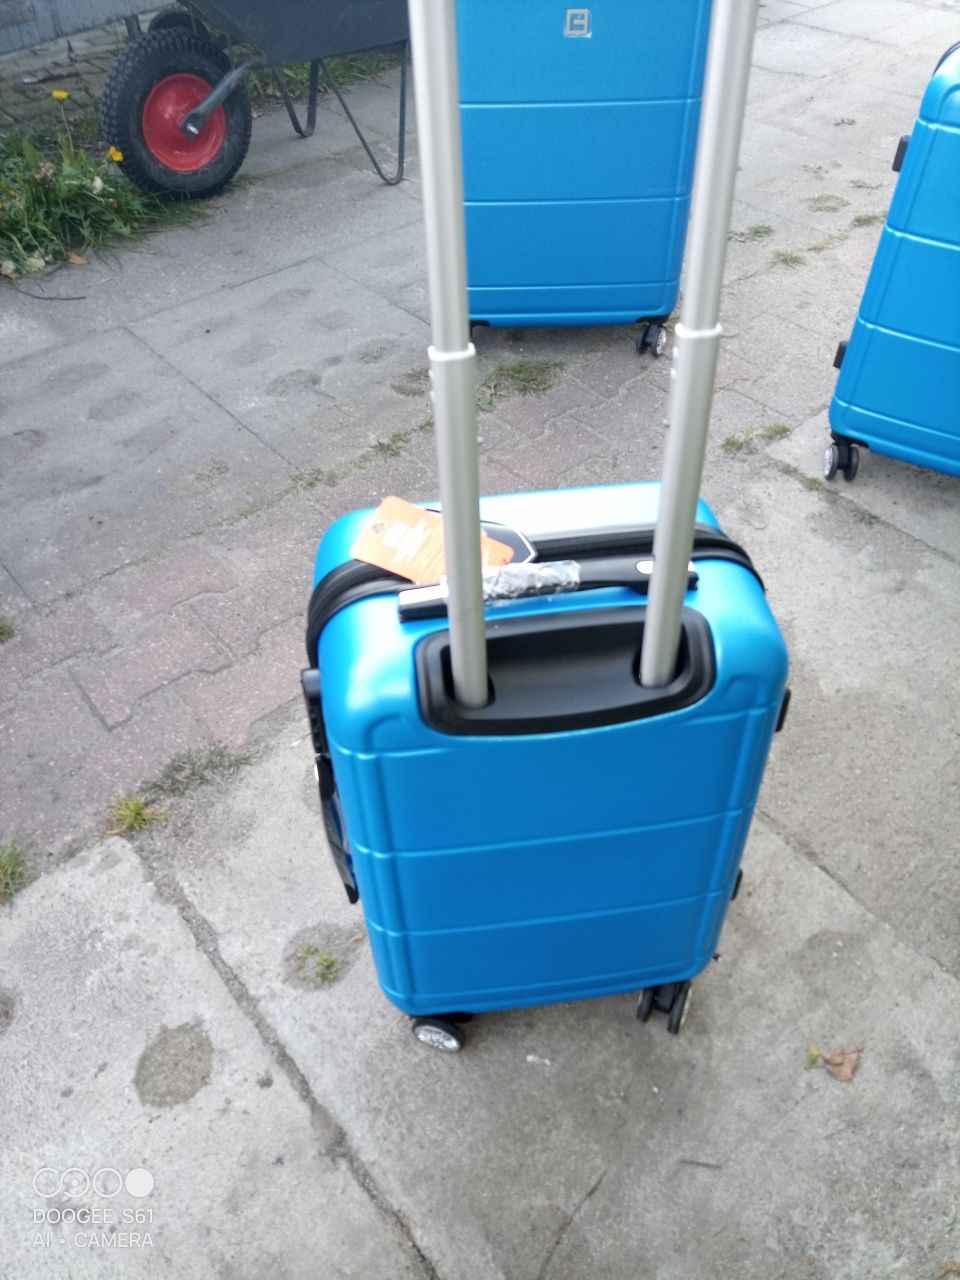 Nowa mała walizka podróżna ABS na 4 kółkach obracanych 360 stopni